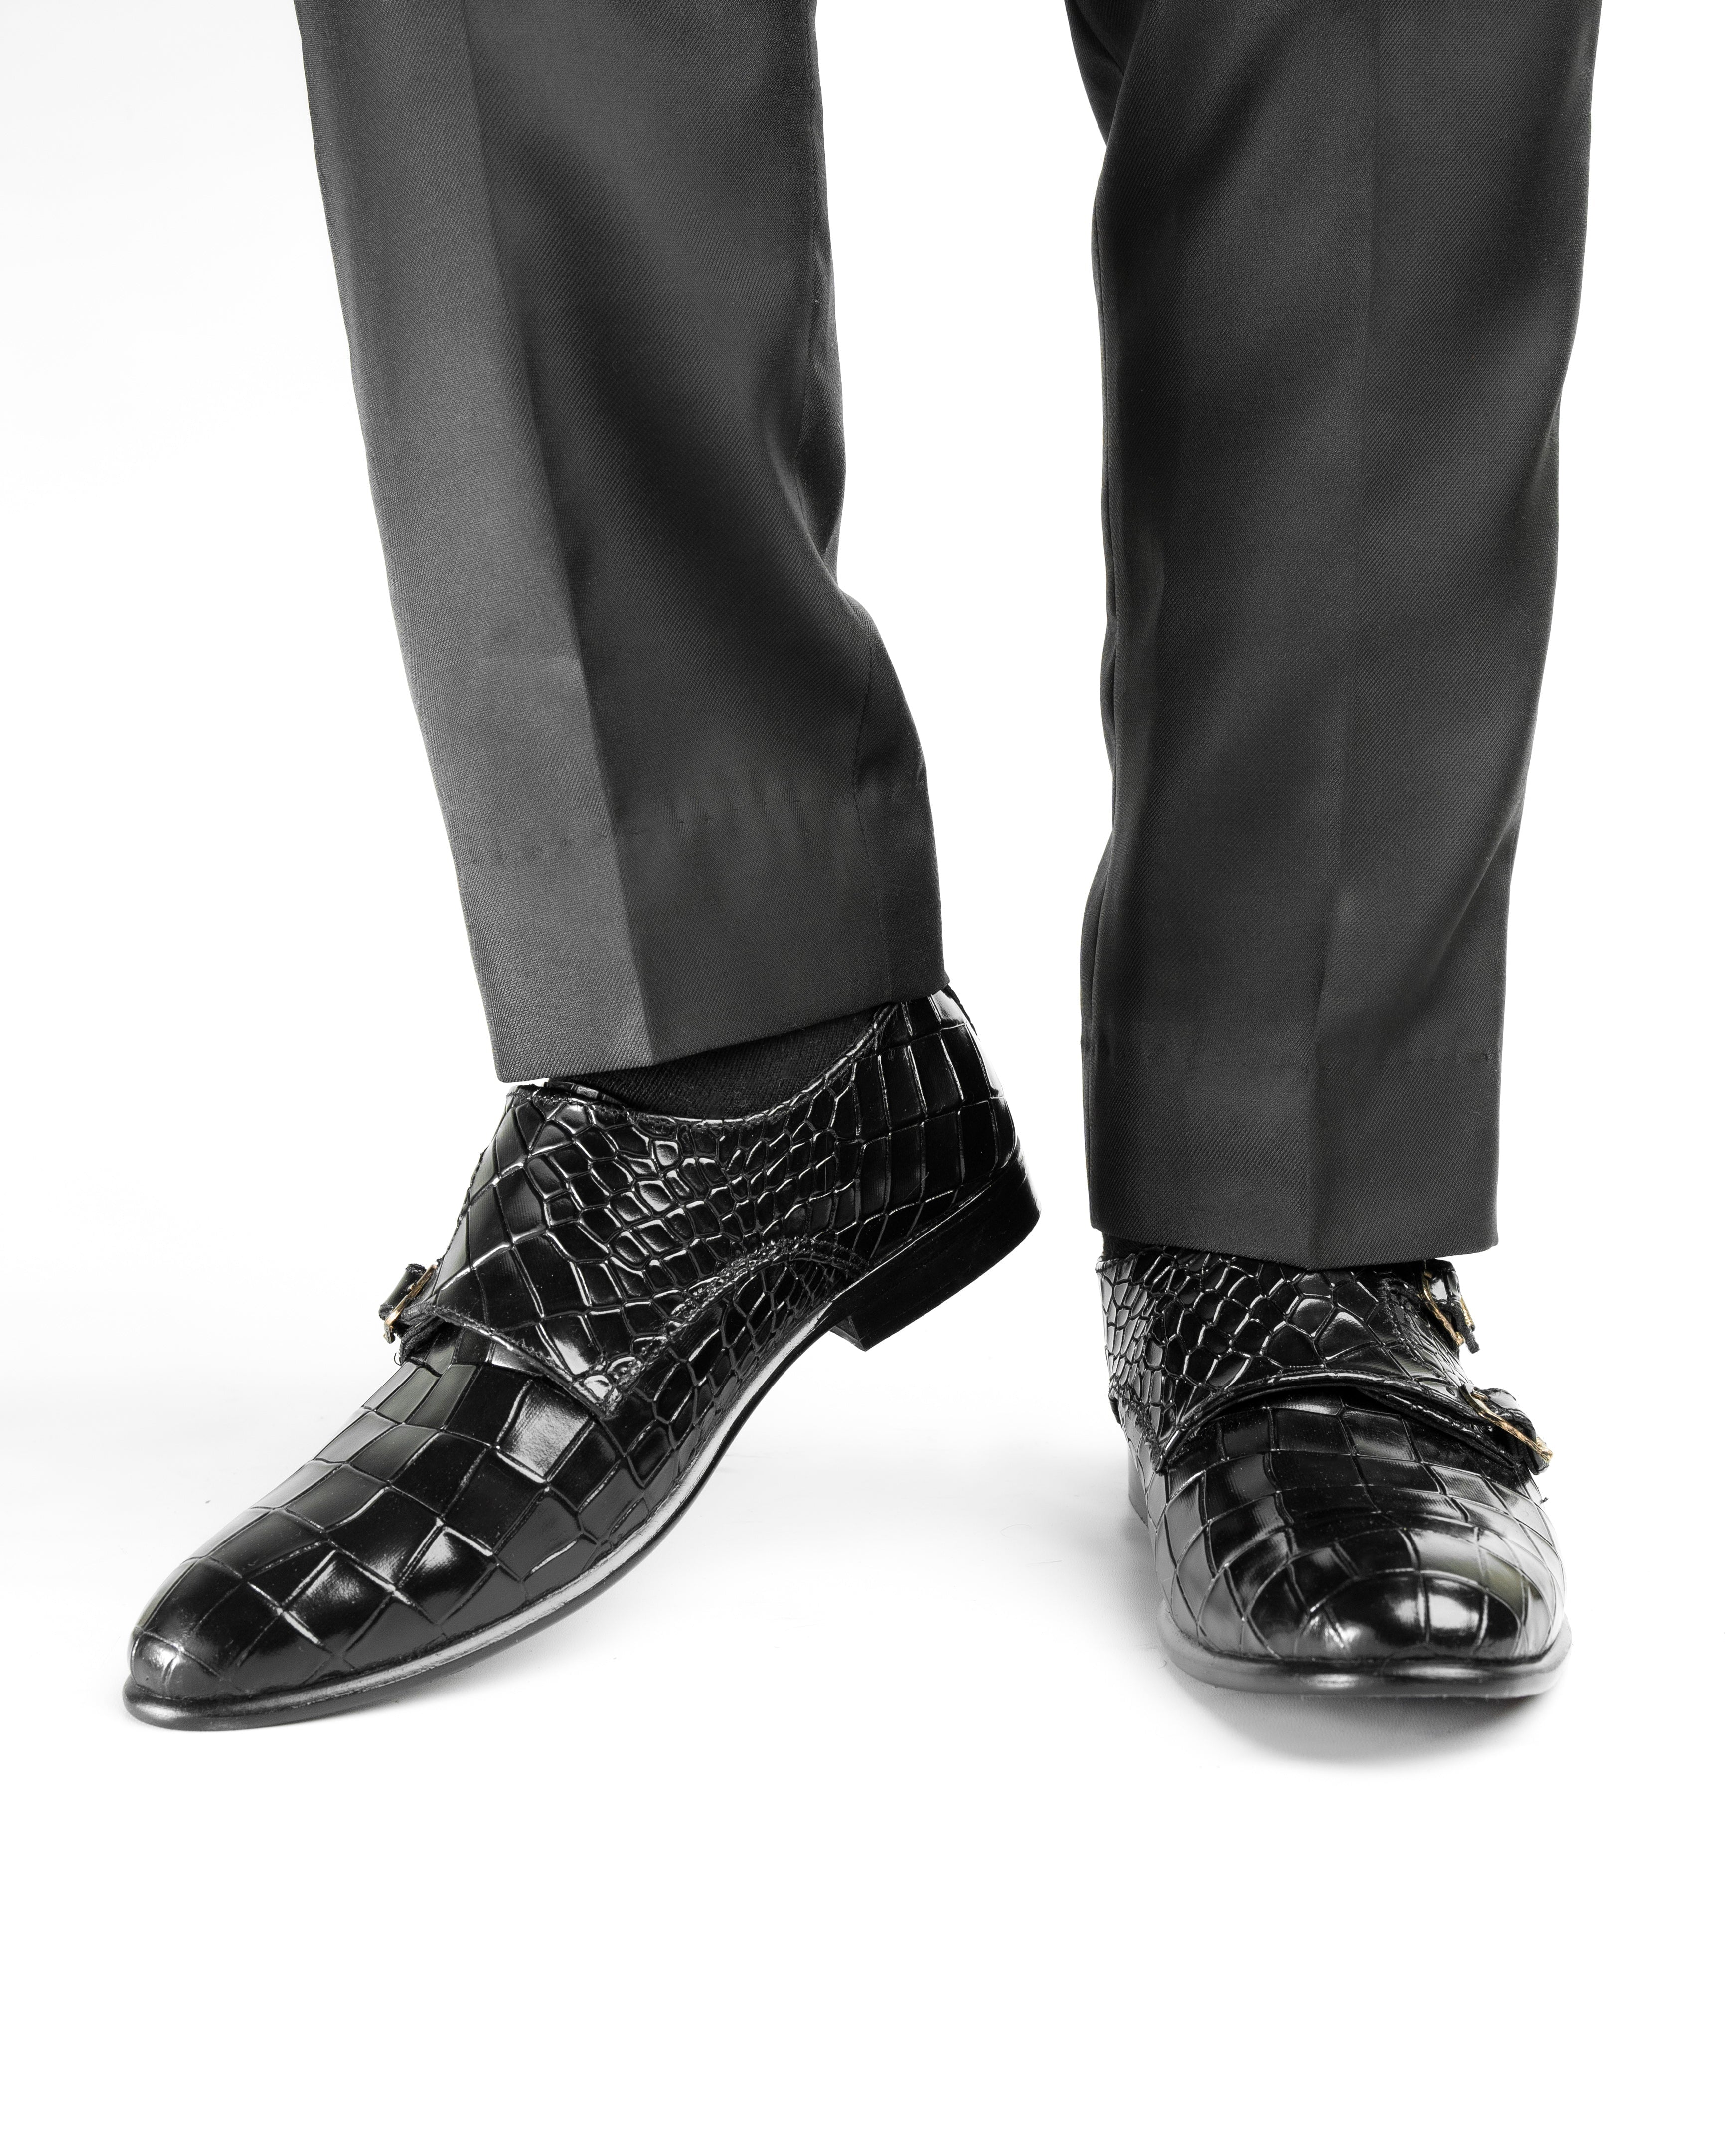 SNS5 Croc Style premium leather black shoe for men Shop n Save Pakistan